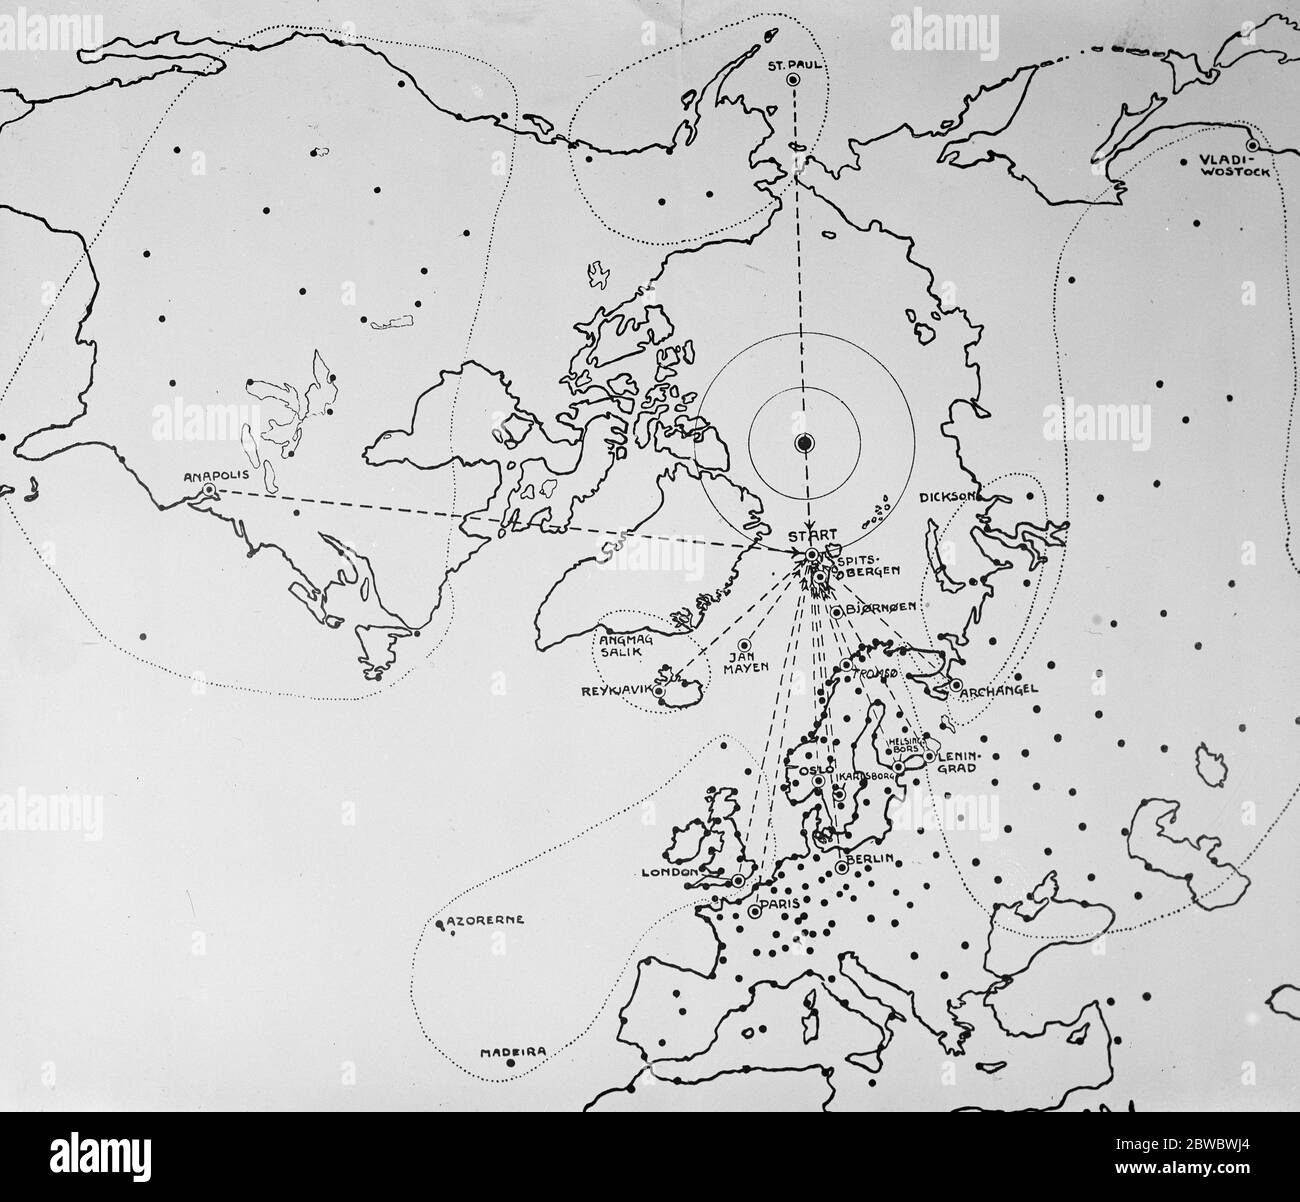 Wetterprobleme des Polarfluges einige Hundert tägliche Berichte per Funk werden als Grundlage für eine Vorhersage der Wetterverhältnisse auf der Polarkappe verwendet, um festzustellen, wann das Wetter ausreichend stabil ist, um den Polarflug zu ermöglichen. Wie in dieser Karte zu sehen sein wird, wird die Expedition Wetterhinweise aus dem größten Teil der nördlichen Hemisphäre erhalten 14 April 1925 Stockfoto